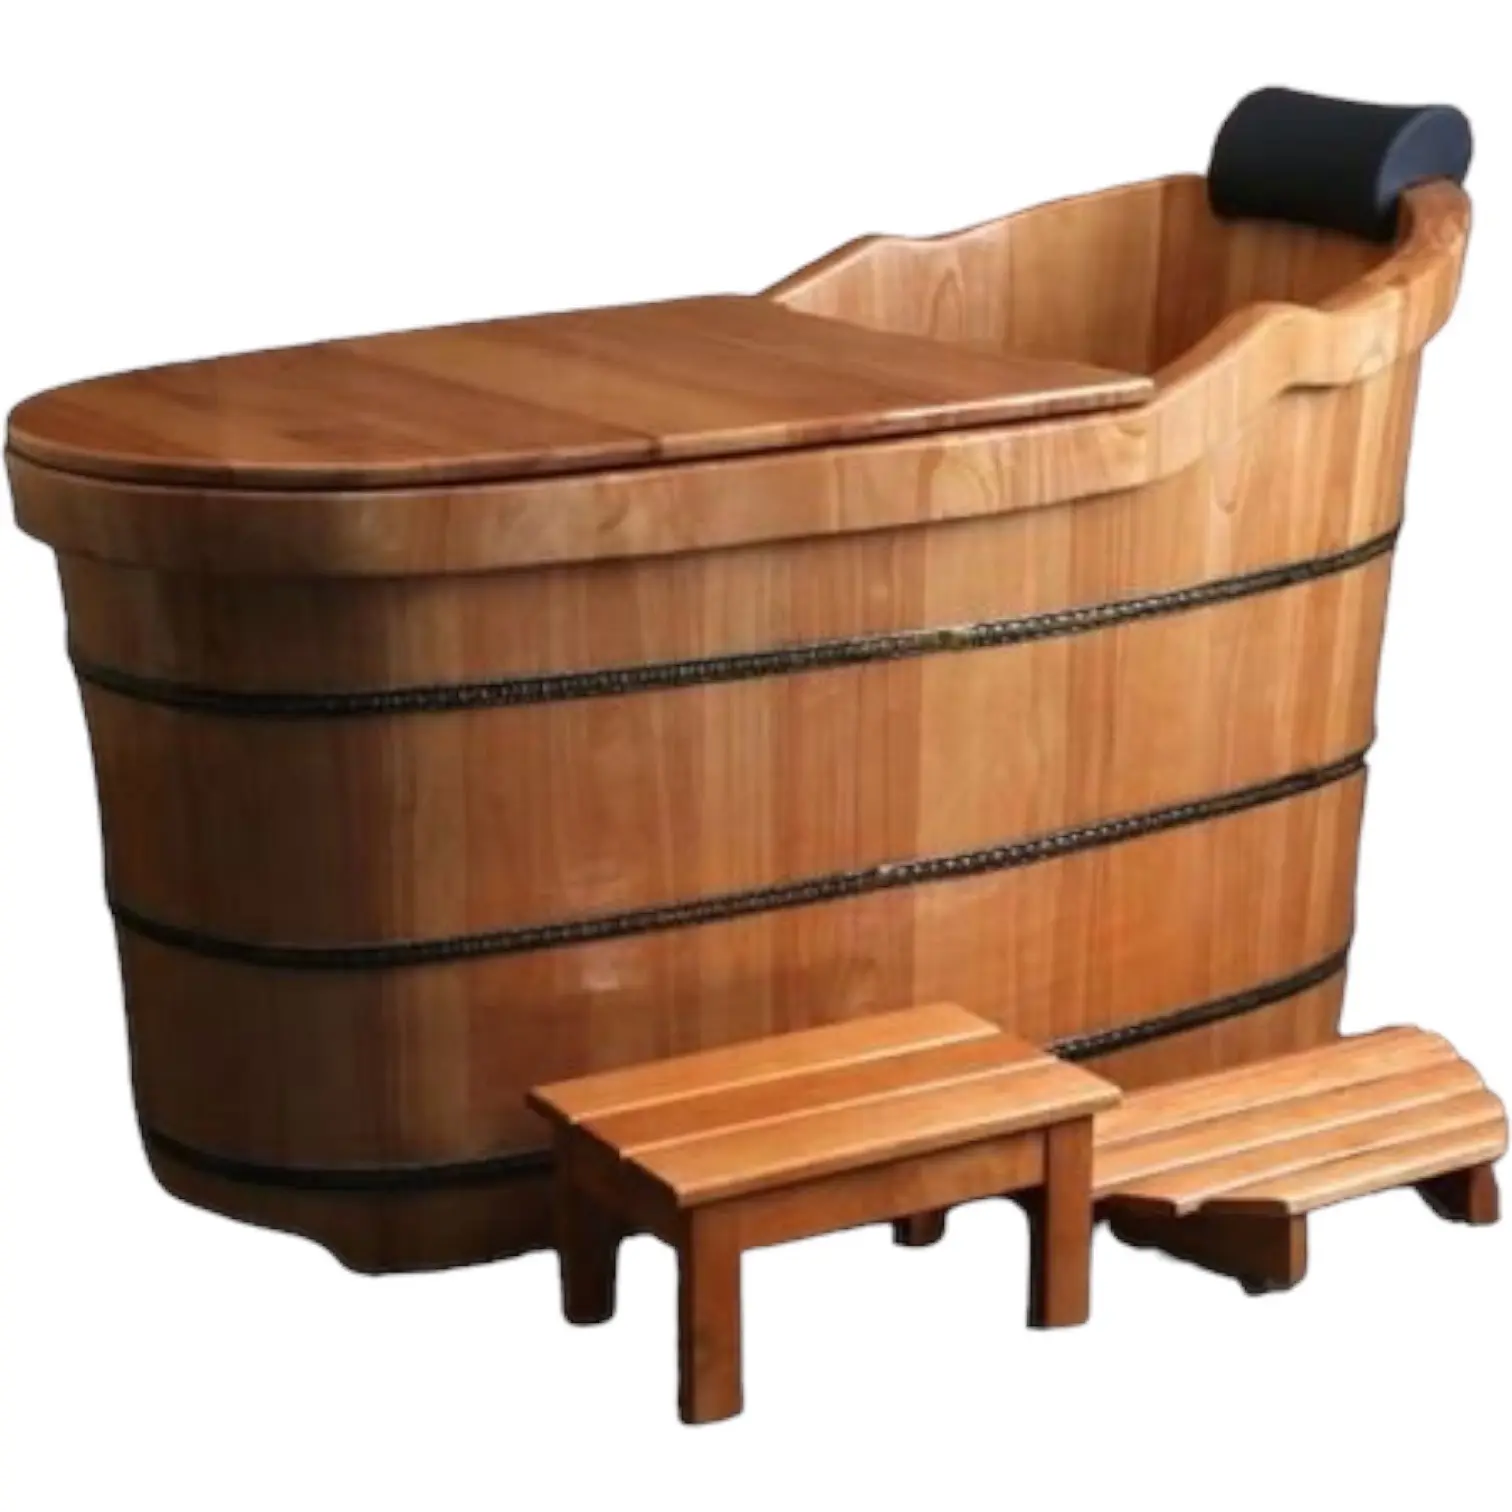 Vasca idromassaggio in legno Free Standing vasca da bagno portatile in legno per adulti vasca da bagno per vasca da bagno calda realizzata in Vietnam